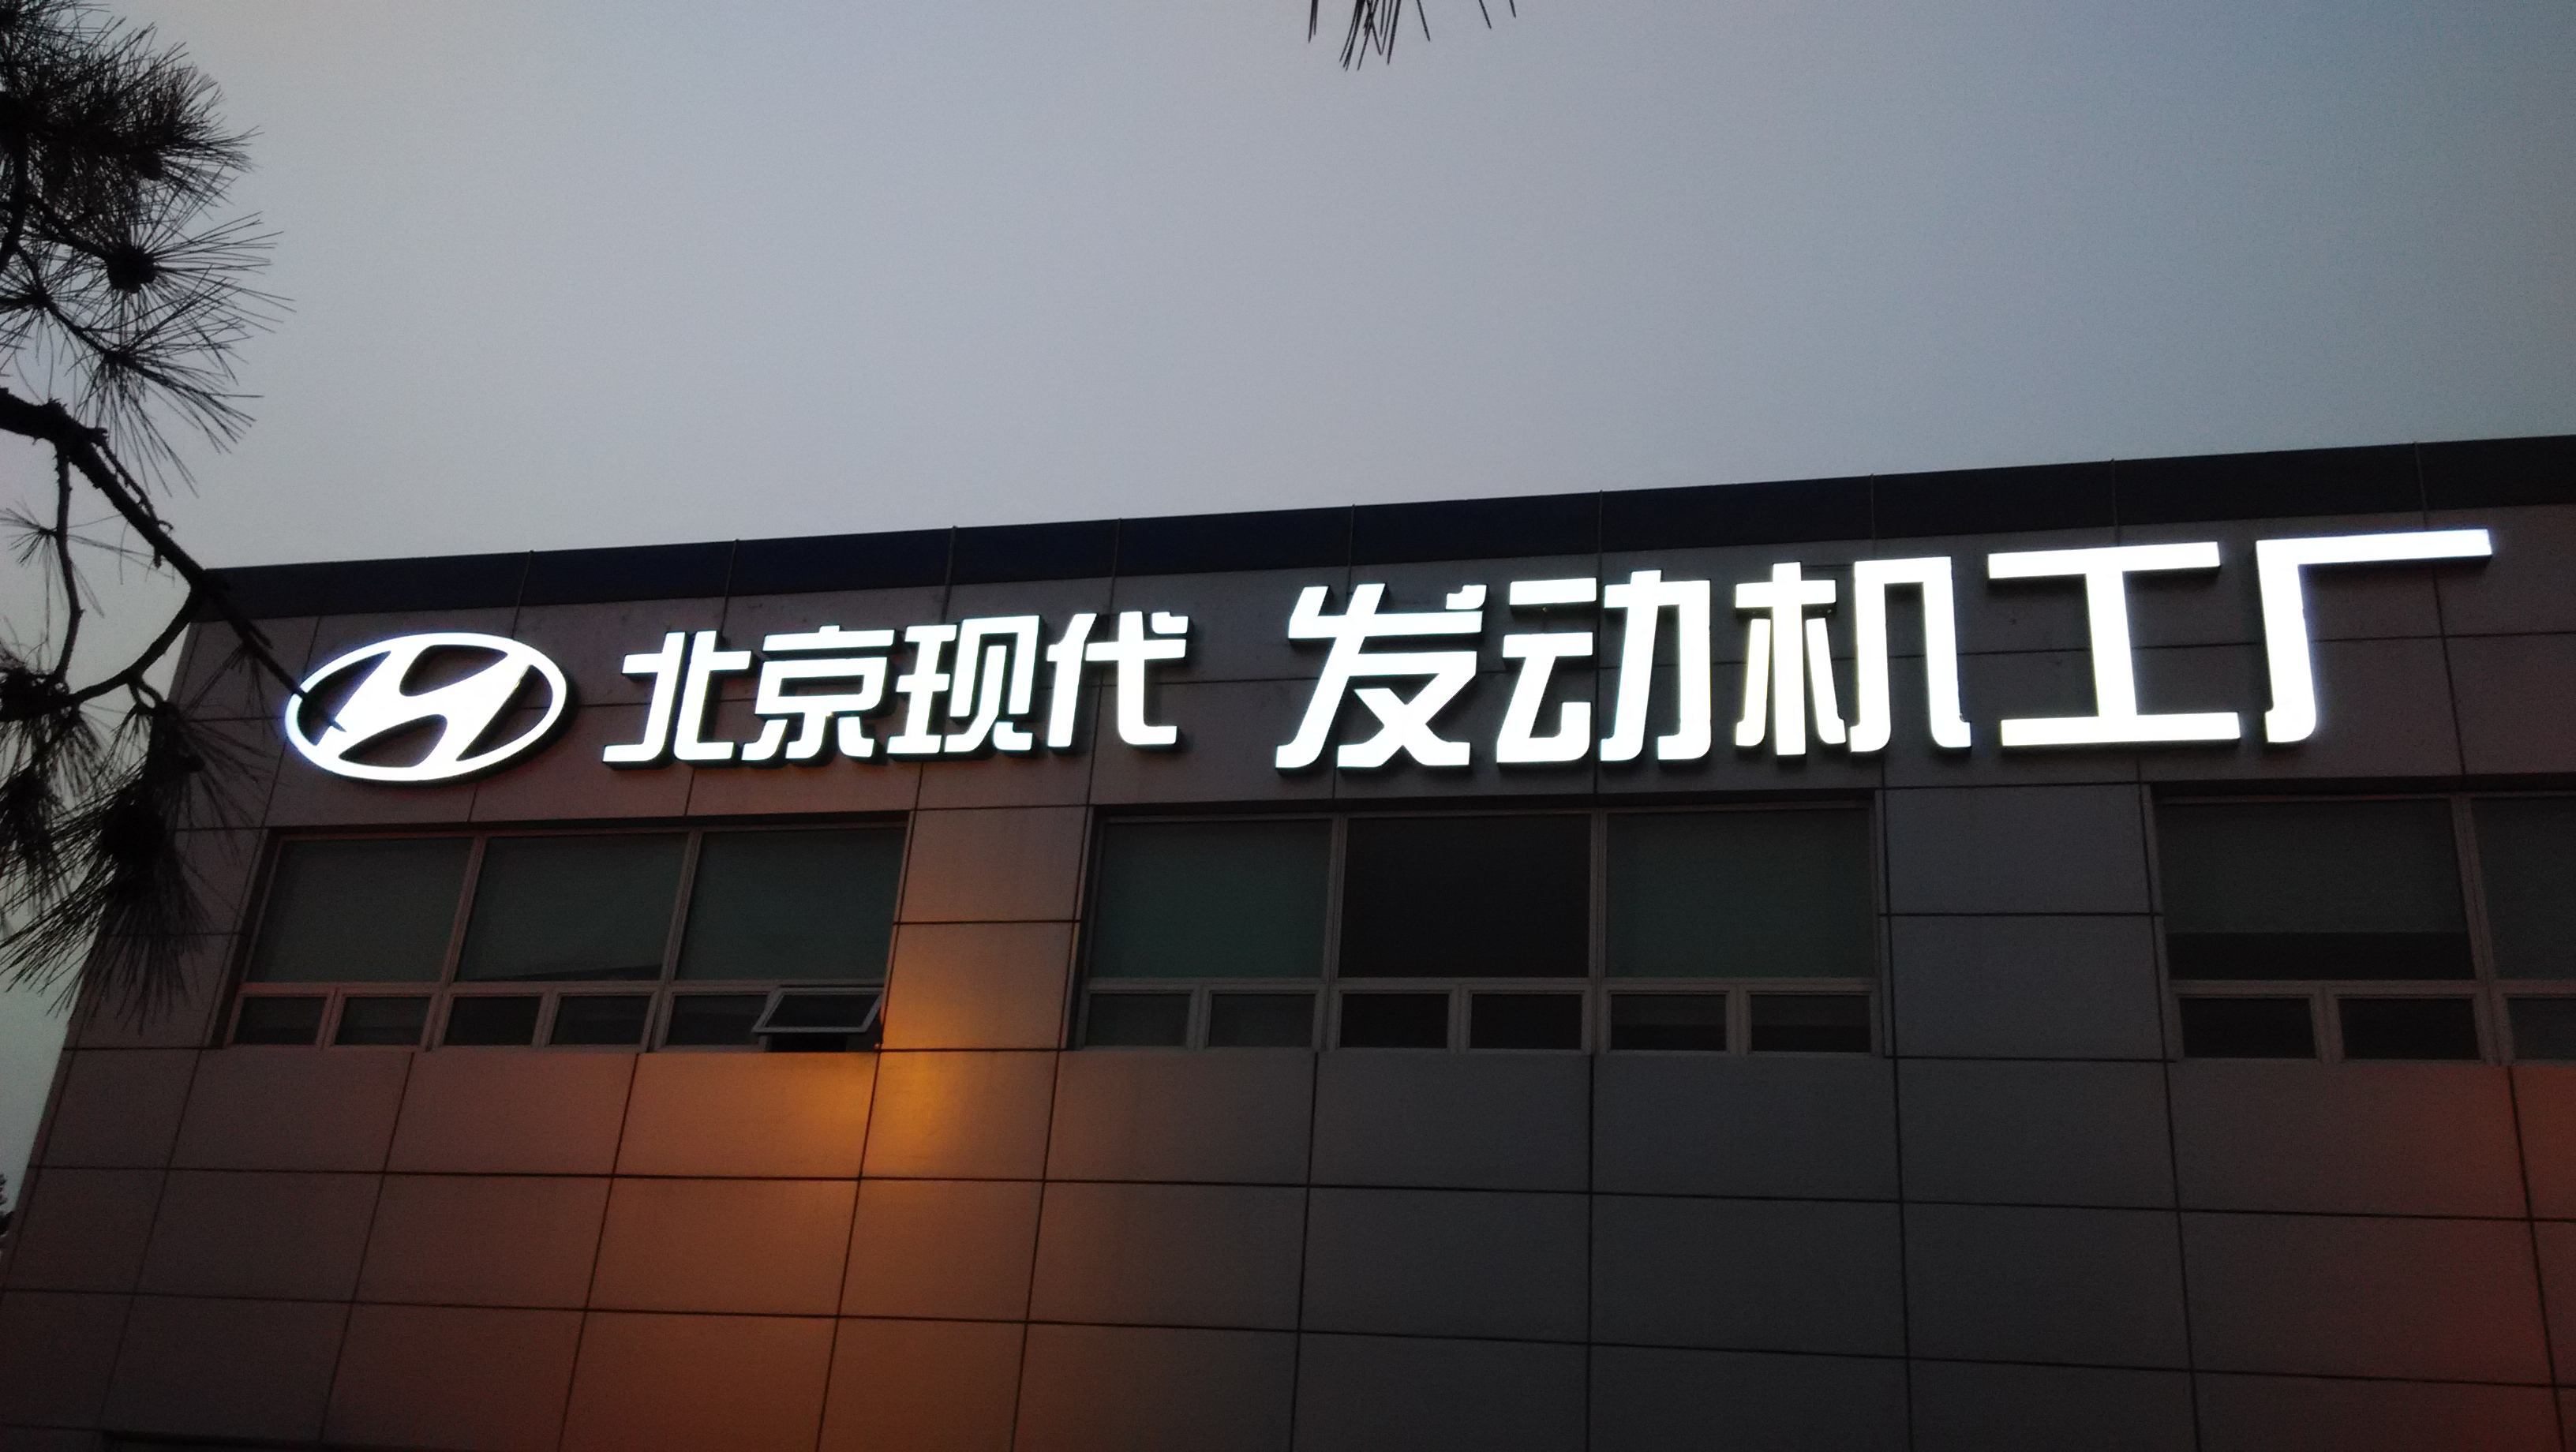 北京树脂发光字订做报价 北京树脂发光字订做多少钱 树脂发光字厂家